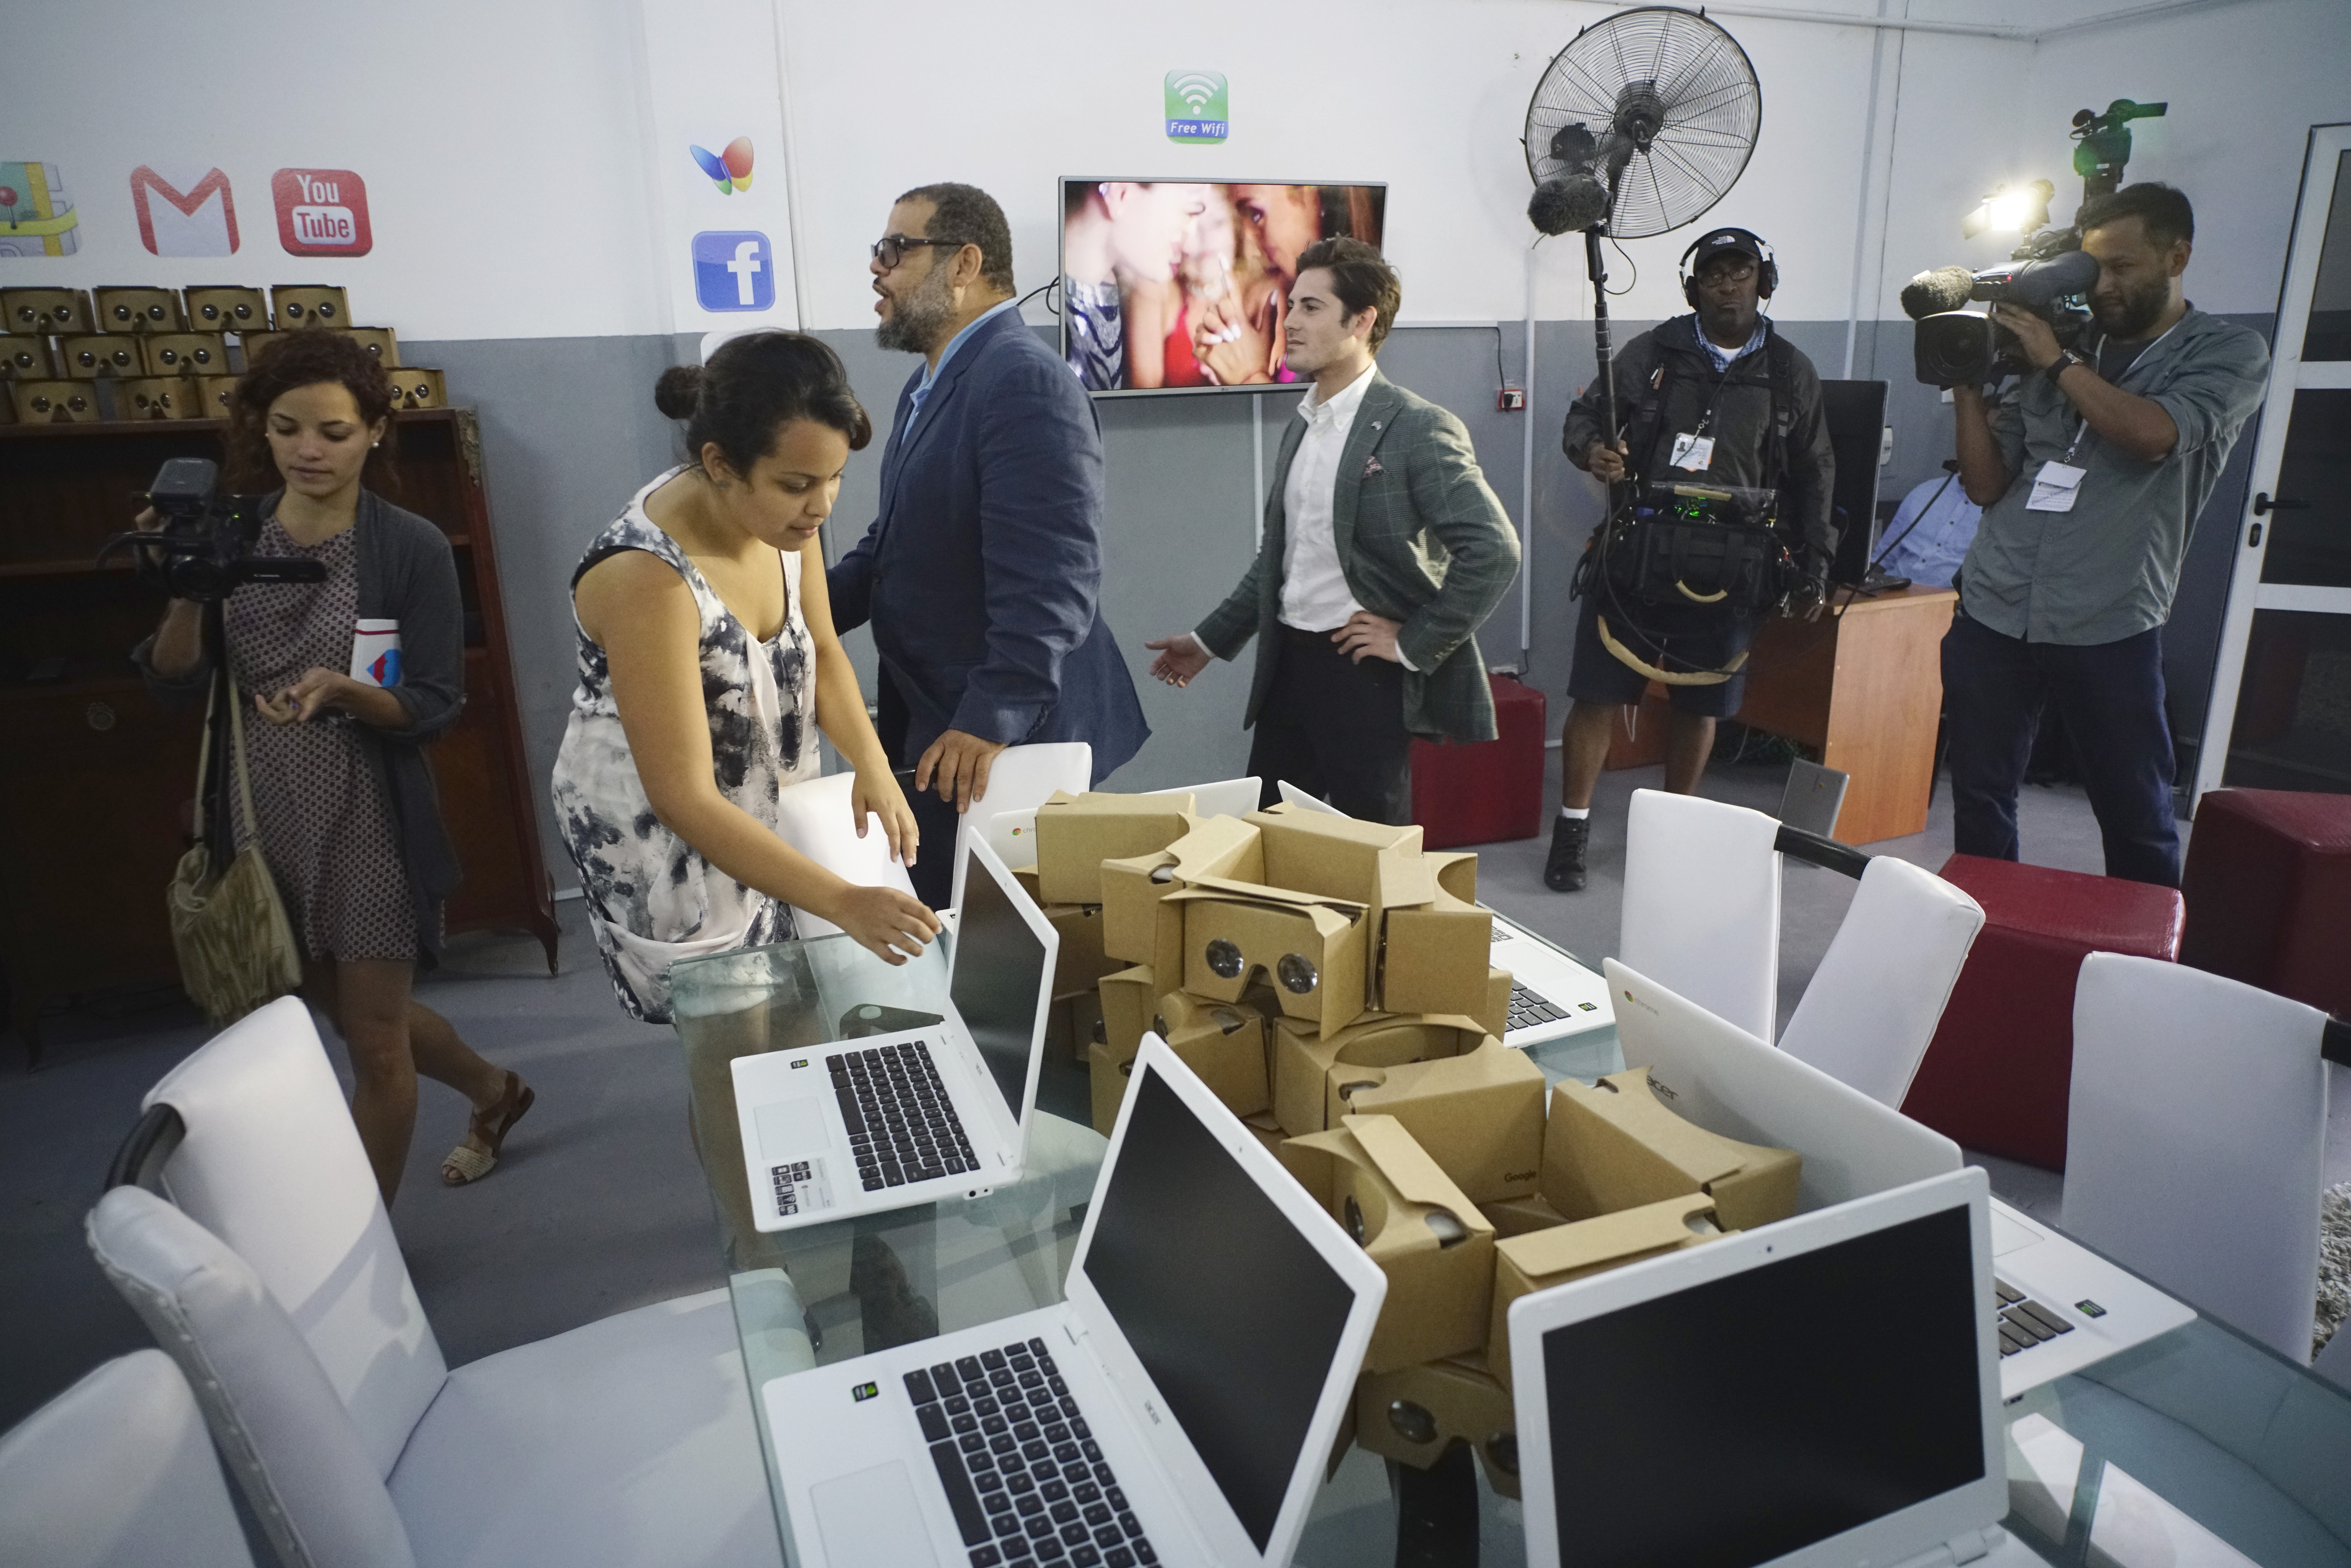 El nuevo centro de tecnología de Google que ofrecerá acceso gratuito a Internet en La Habana, Cuba